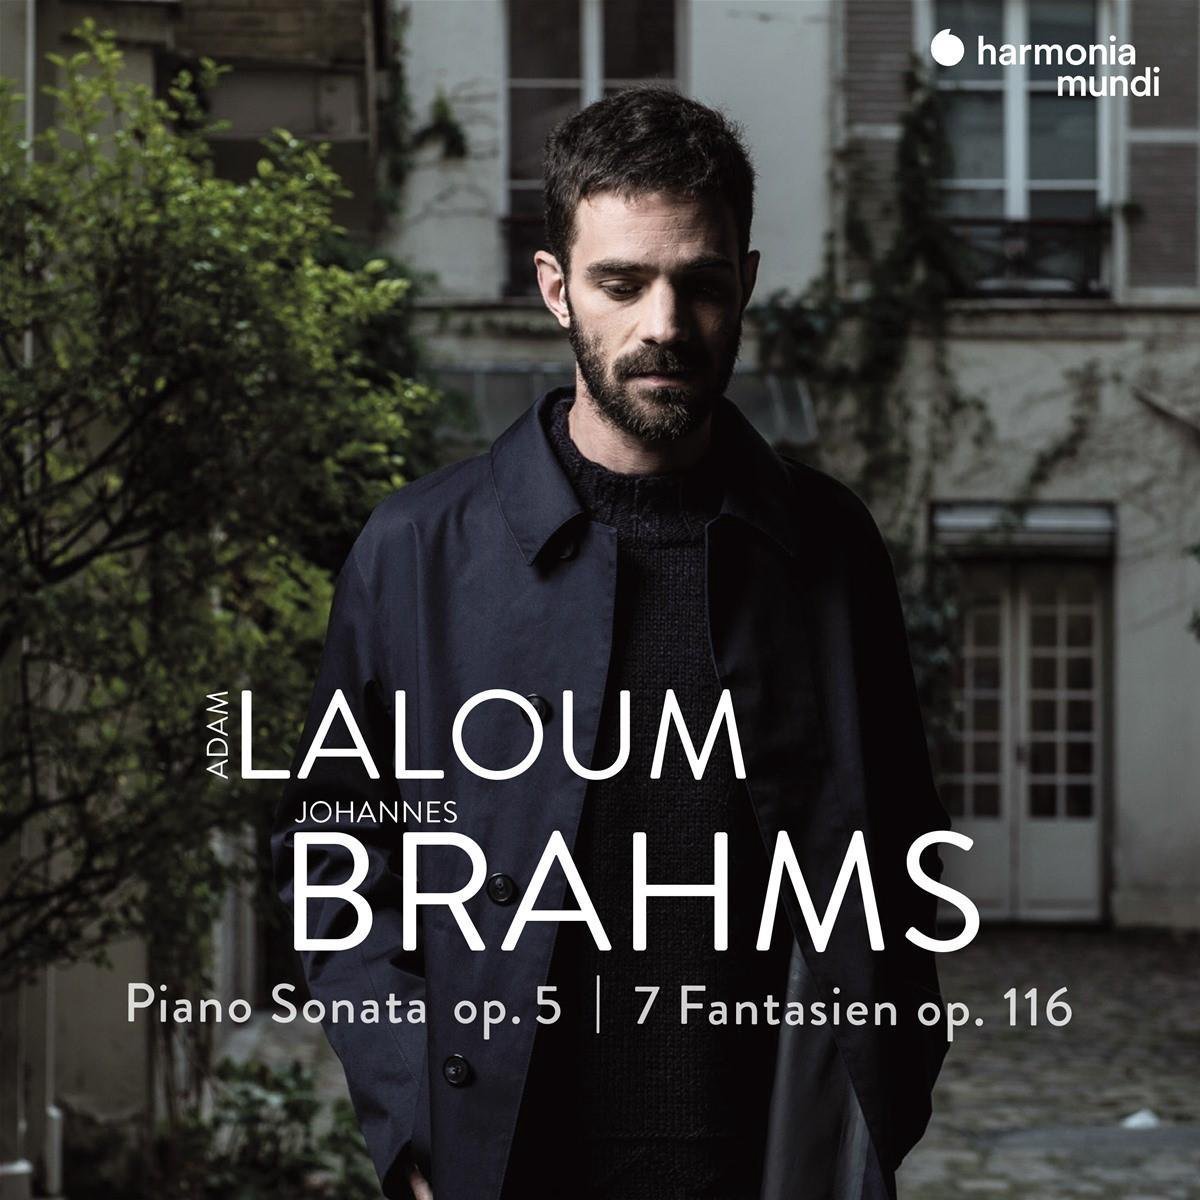 Brahms: Piano Sonata op. 5 & 7 Fantasien op. 116 | Johannes Brahms, Adam Laloum